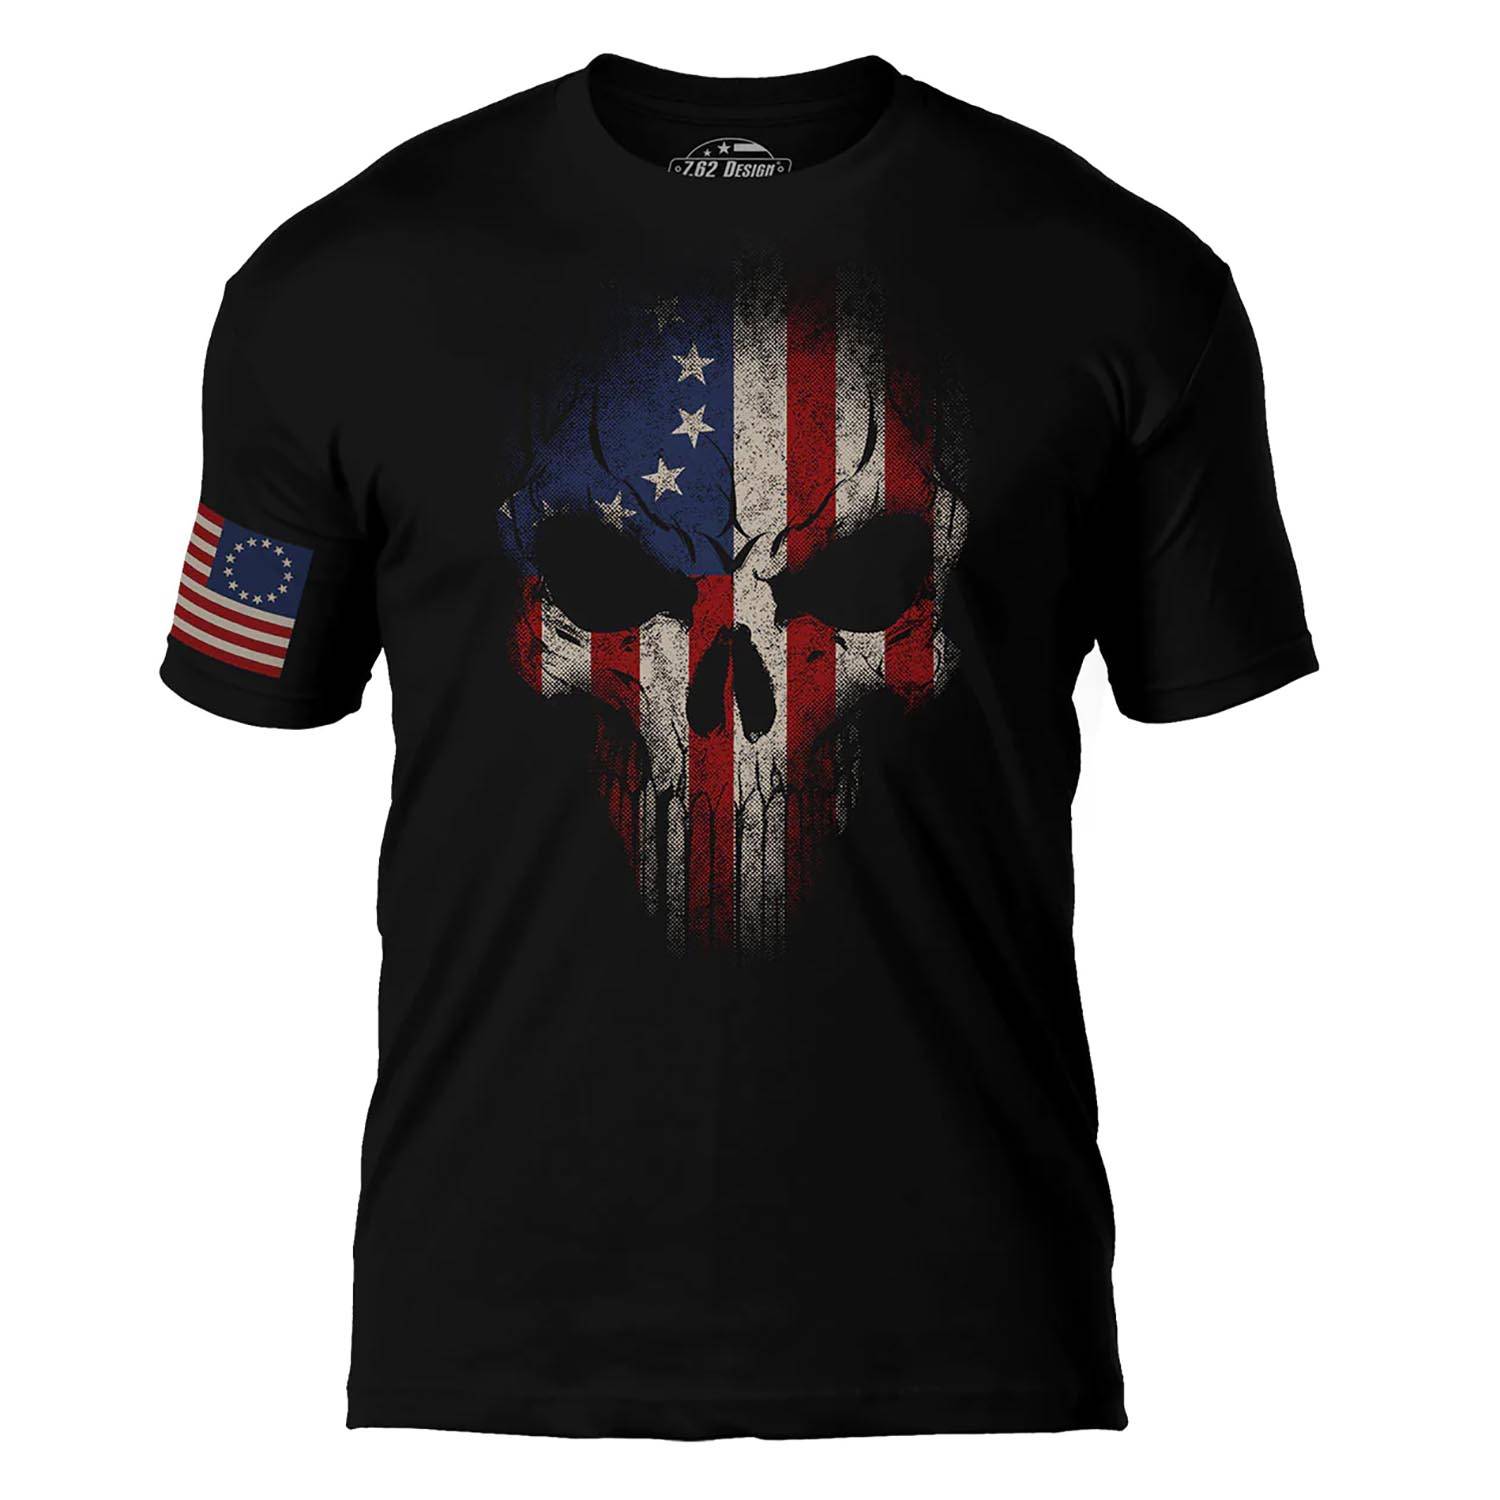 7.62 Design Betsy Ross Flag Skull T-Shirt